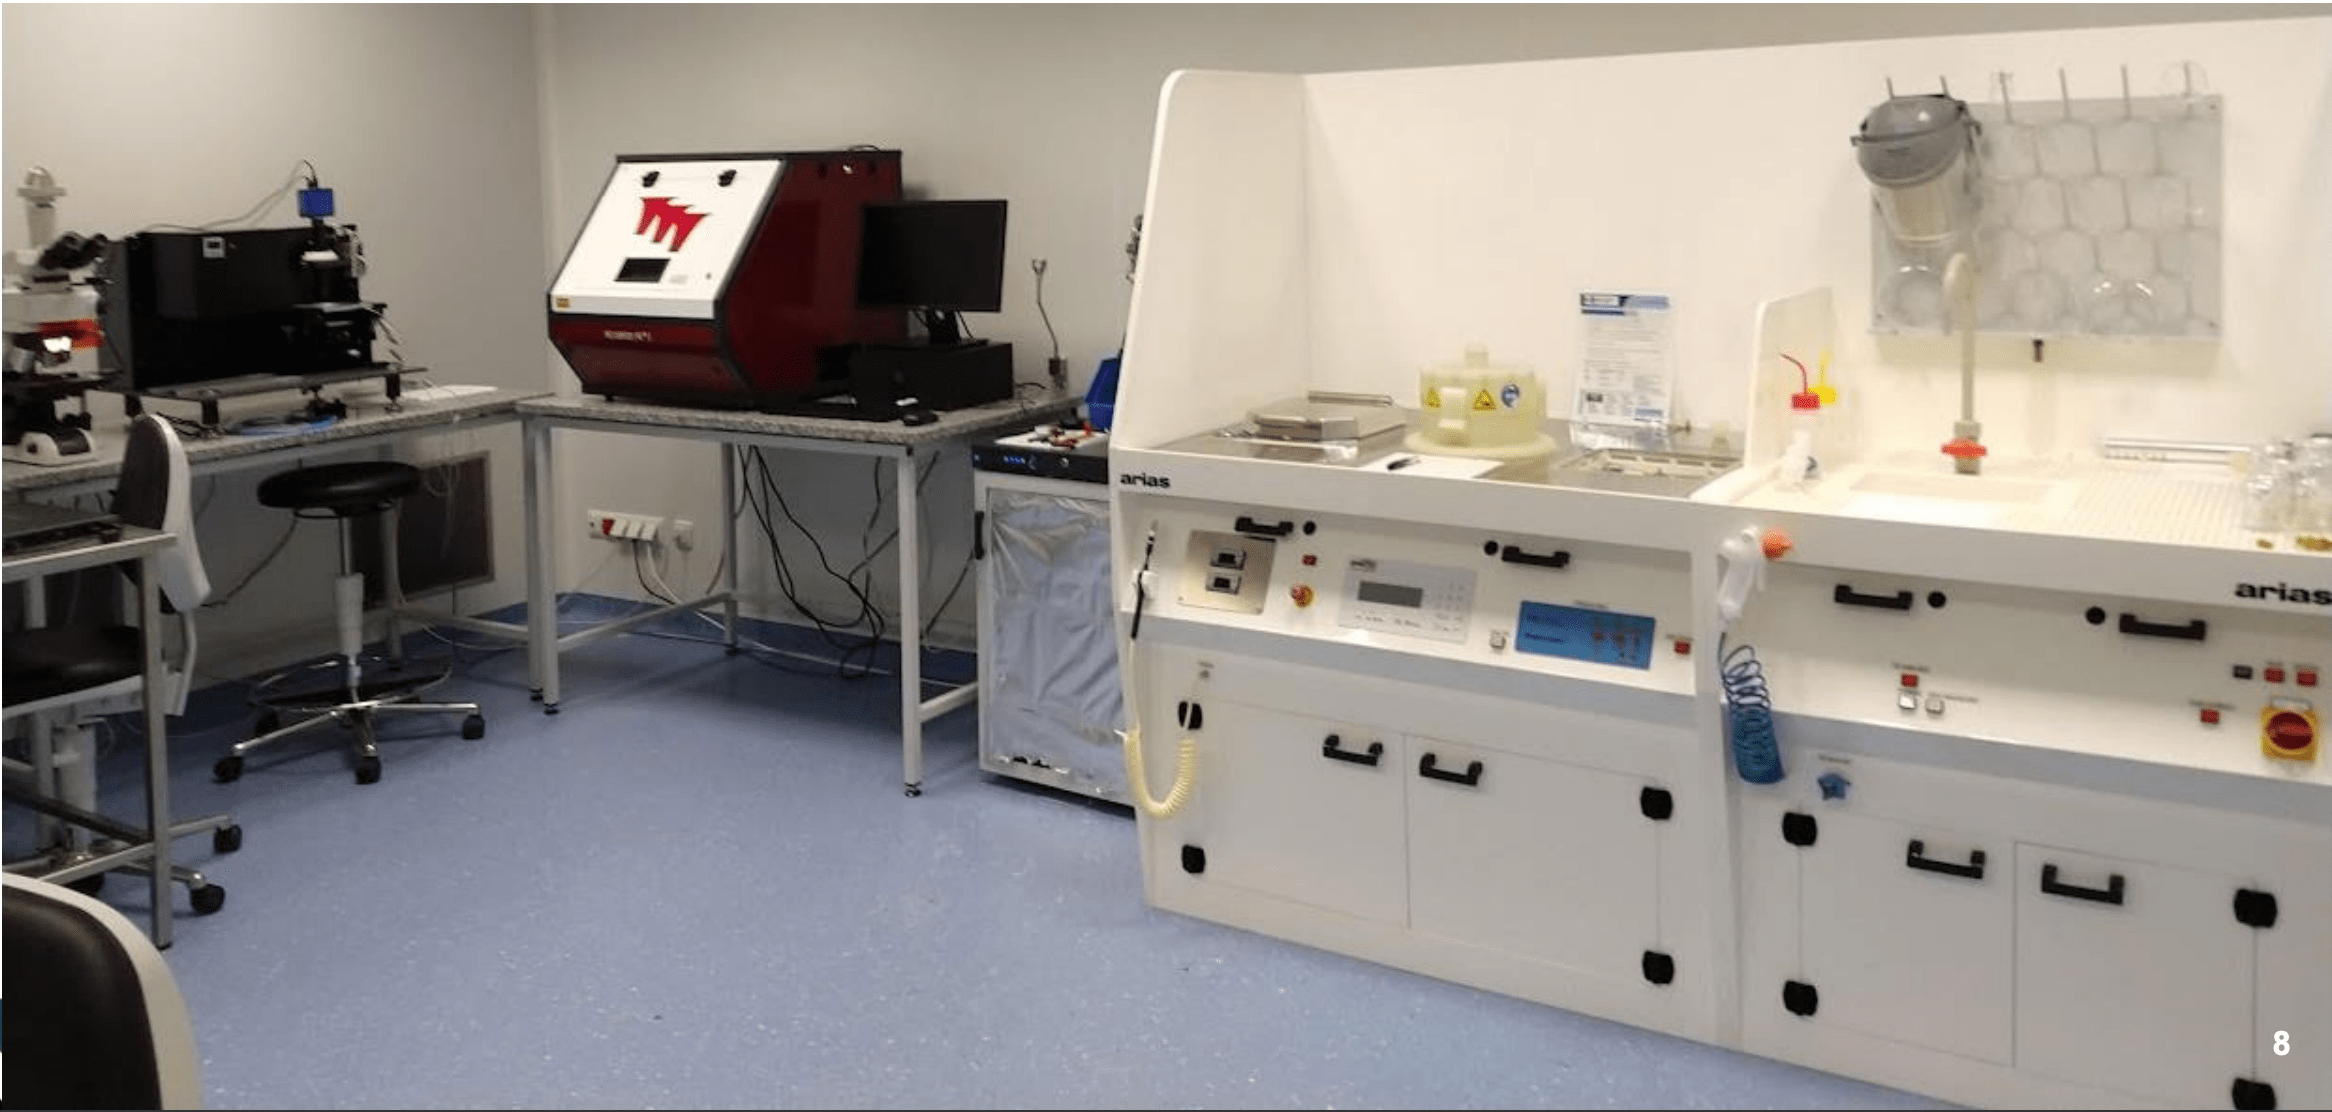 Stół procesowy oraz urządzenie do litografii optycznej – w pomieszczeniu czystym Akademic-kiego Centrum Materiałów i Nanotechnologii AGH